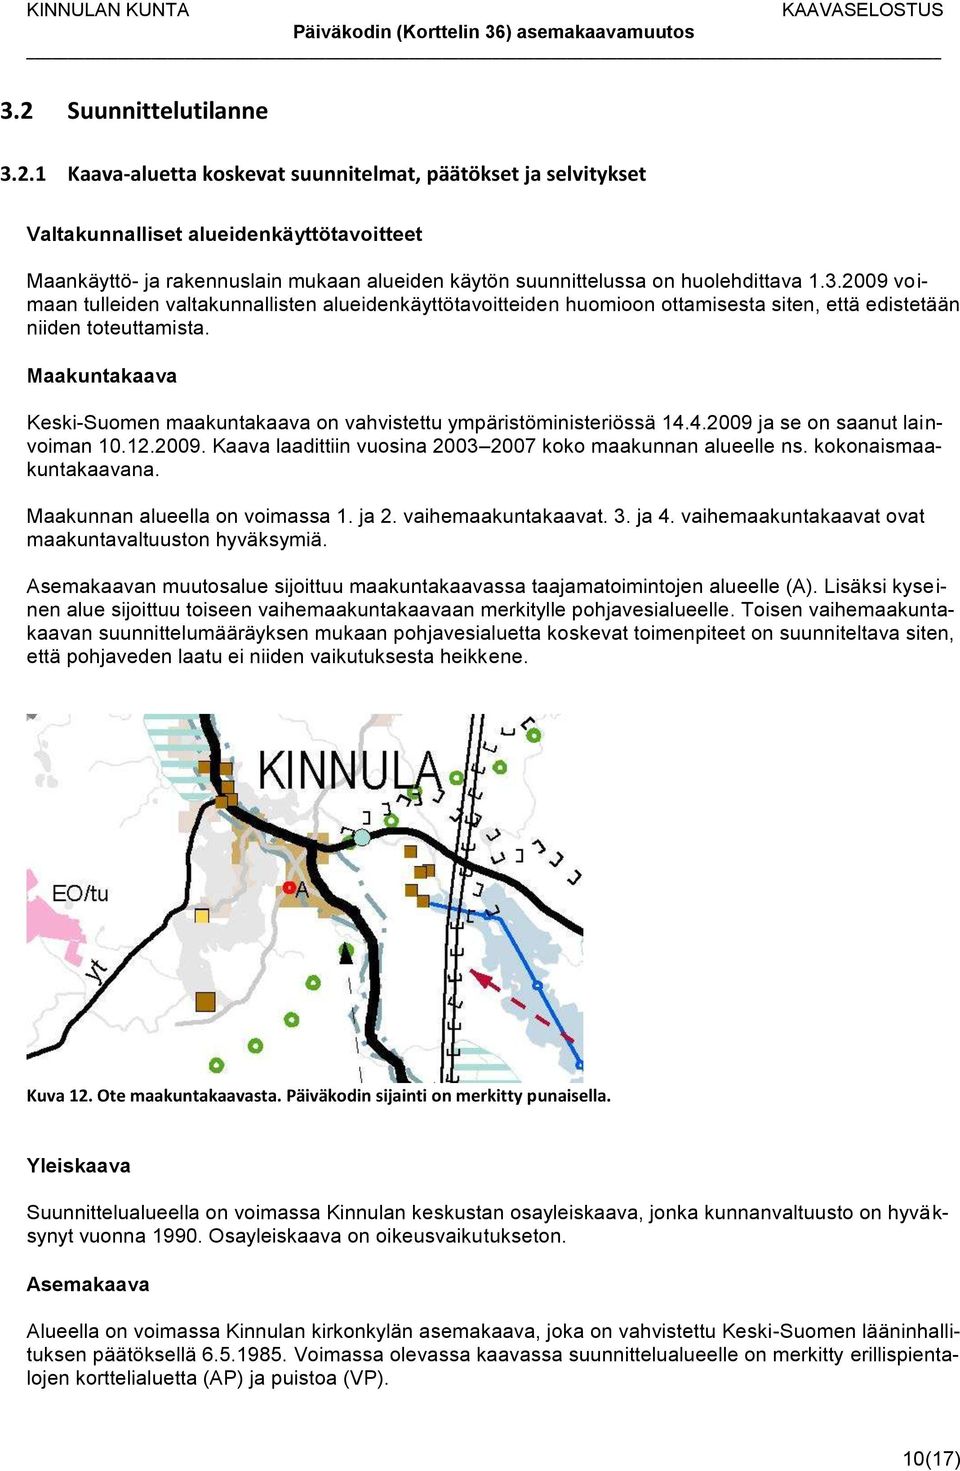 Maakuntakaava Keski-Suomen maakuntakaava on vahvistettu ympäristöministeriössä 14.4.2009 ja se on saanut lainvoiman 10.12.2009. Kaava laadittiin vuosina 2003 2007 koko maakunnan alueelle ns.